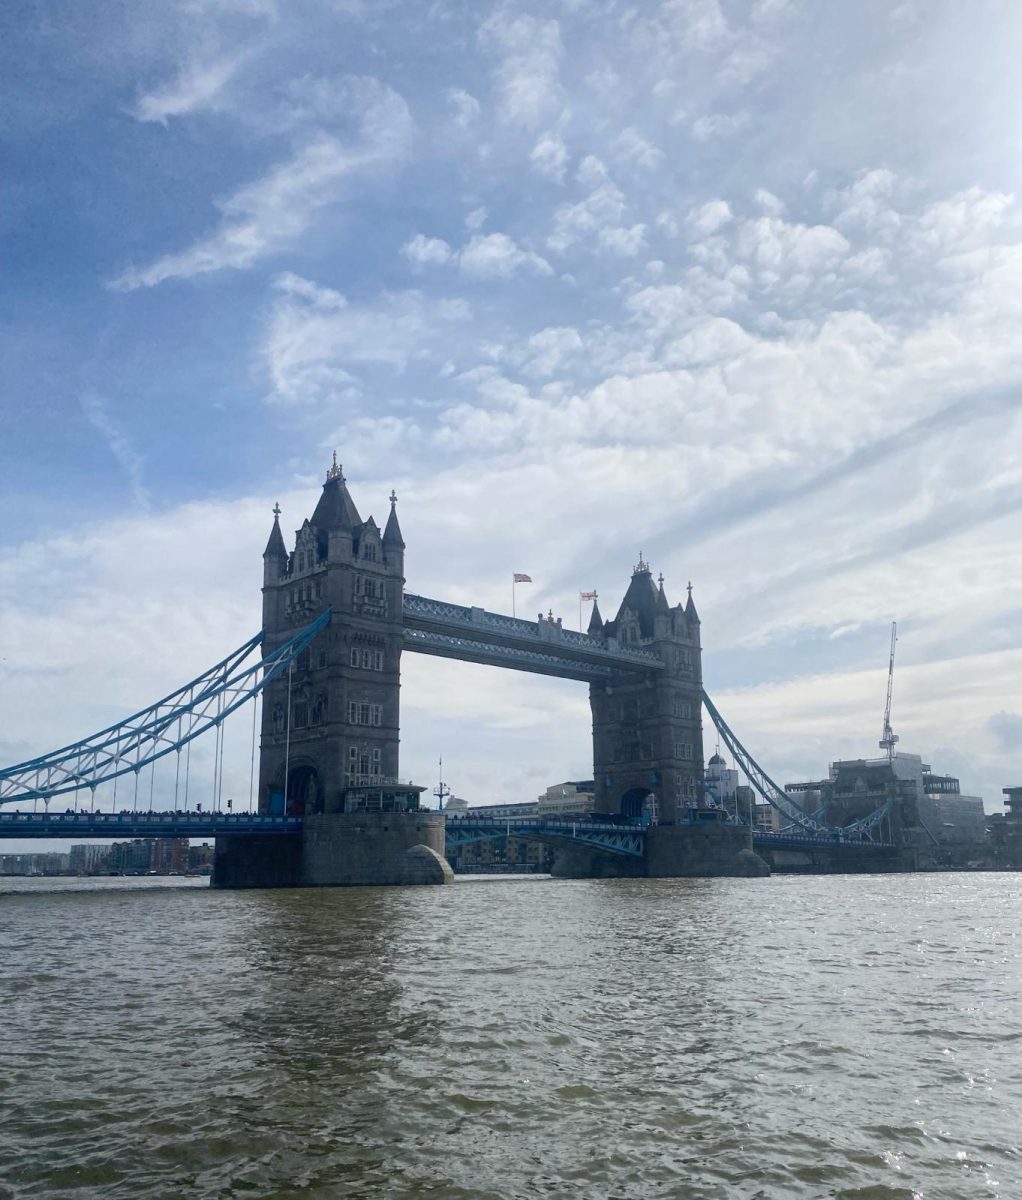 A view of London Bridge.